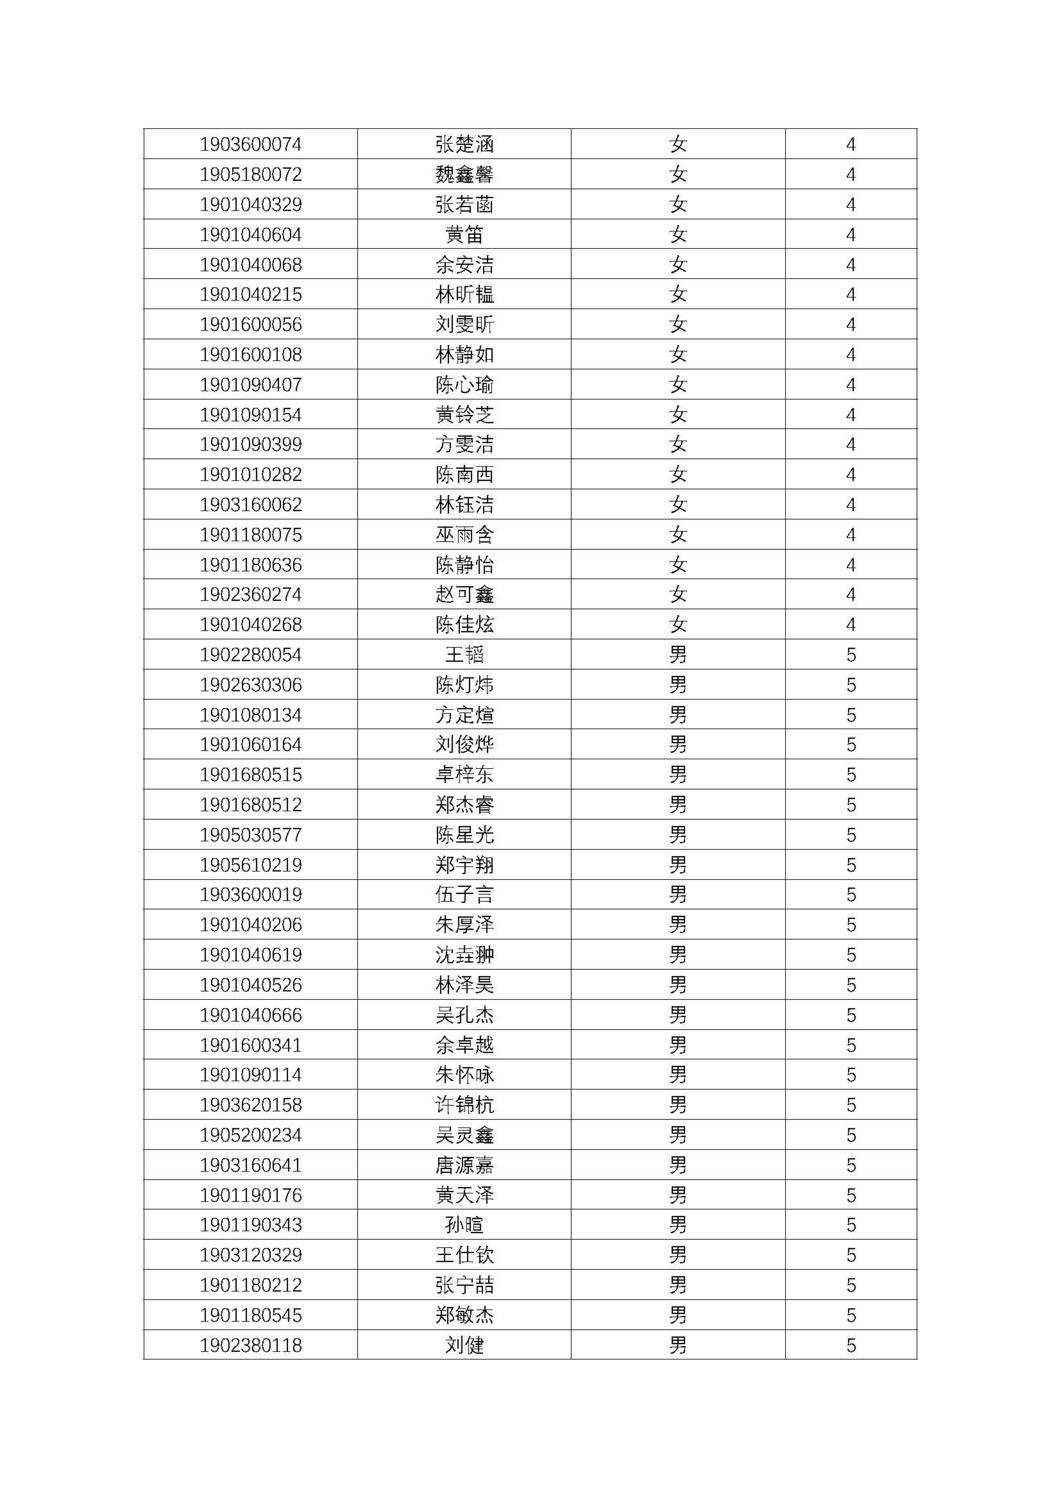 福州第十八中学2019级高一新生分班名单及报到须知_页面_06.jpg